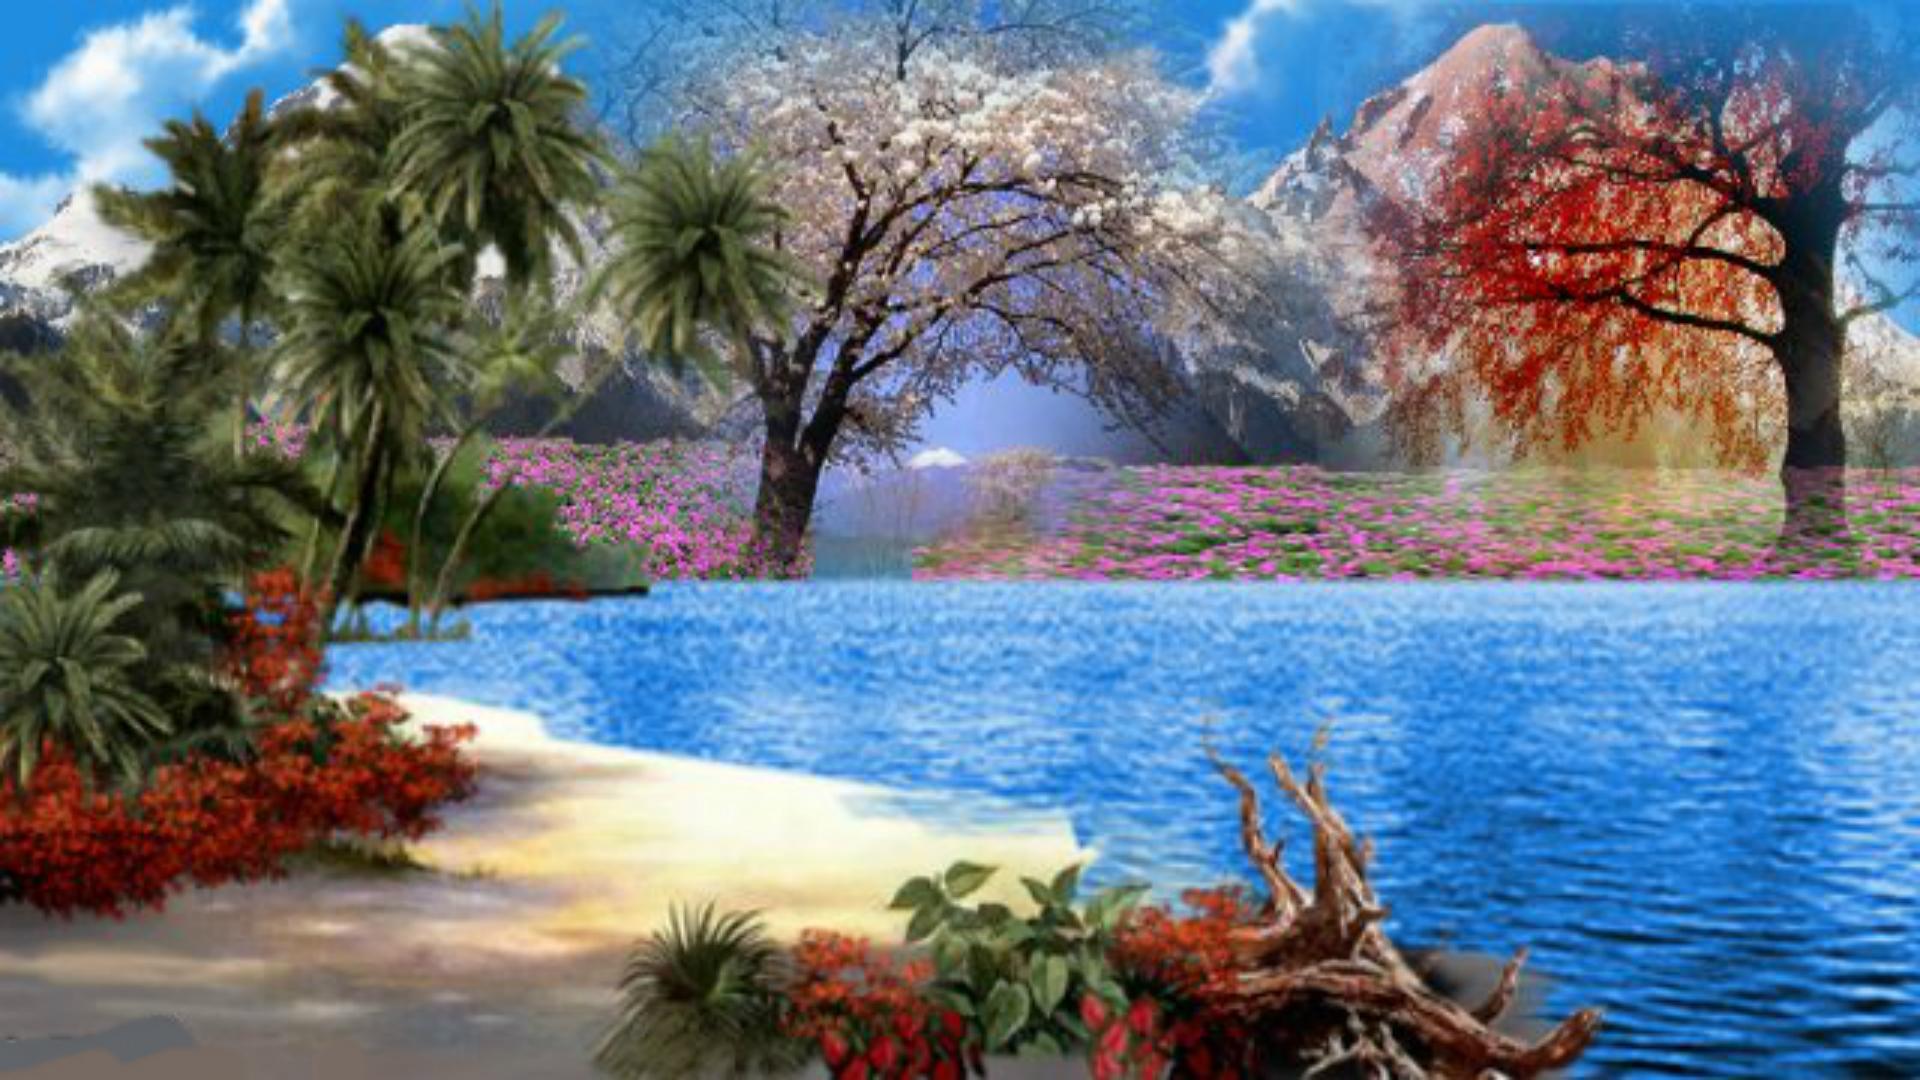 wallpaper surga,natural landscape,nature,tree,sky,landscape